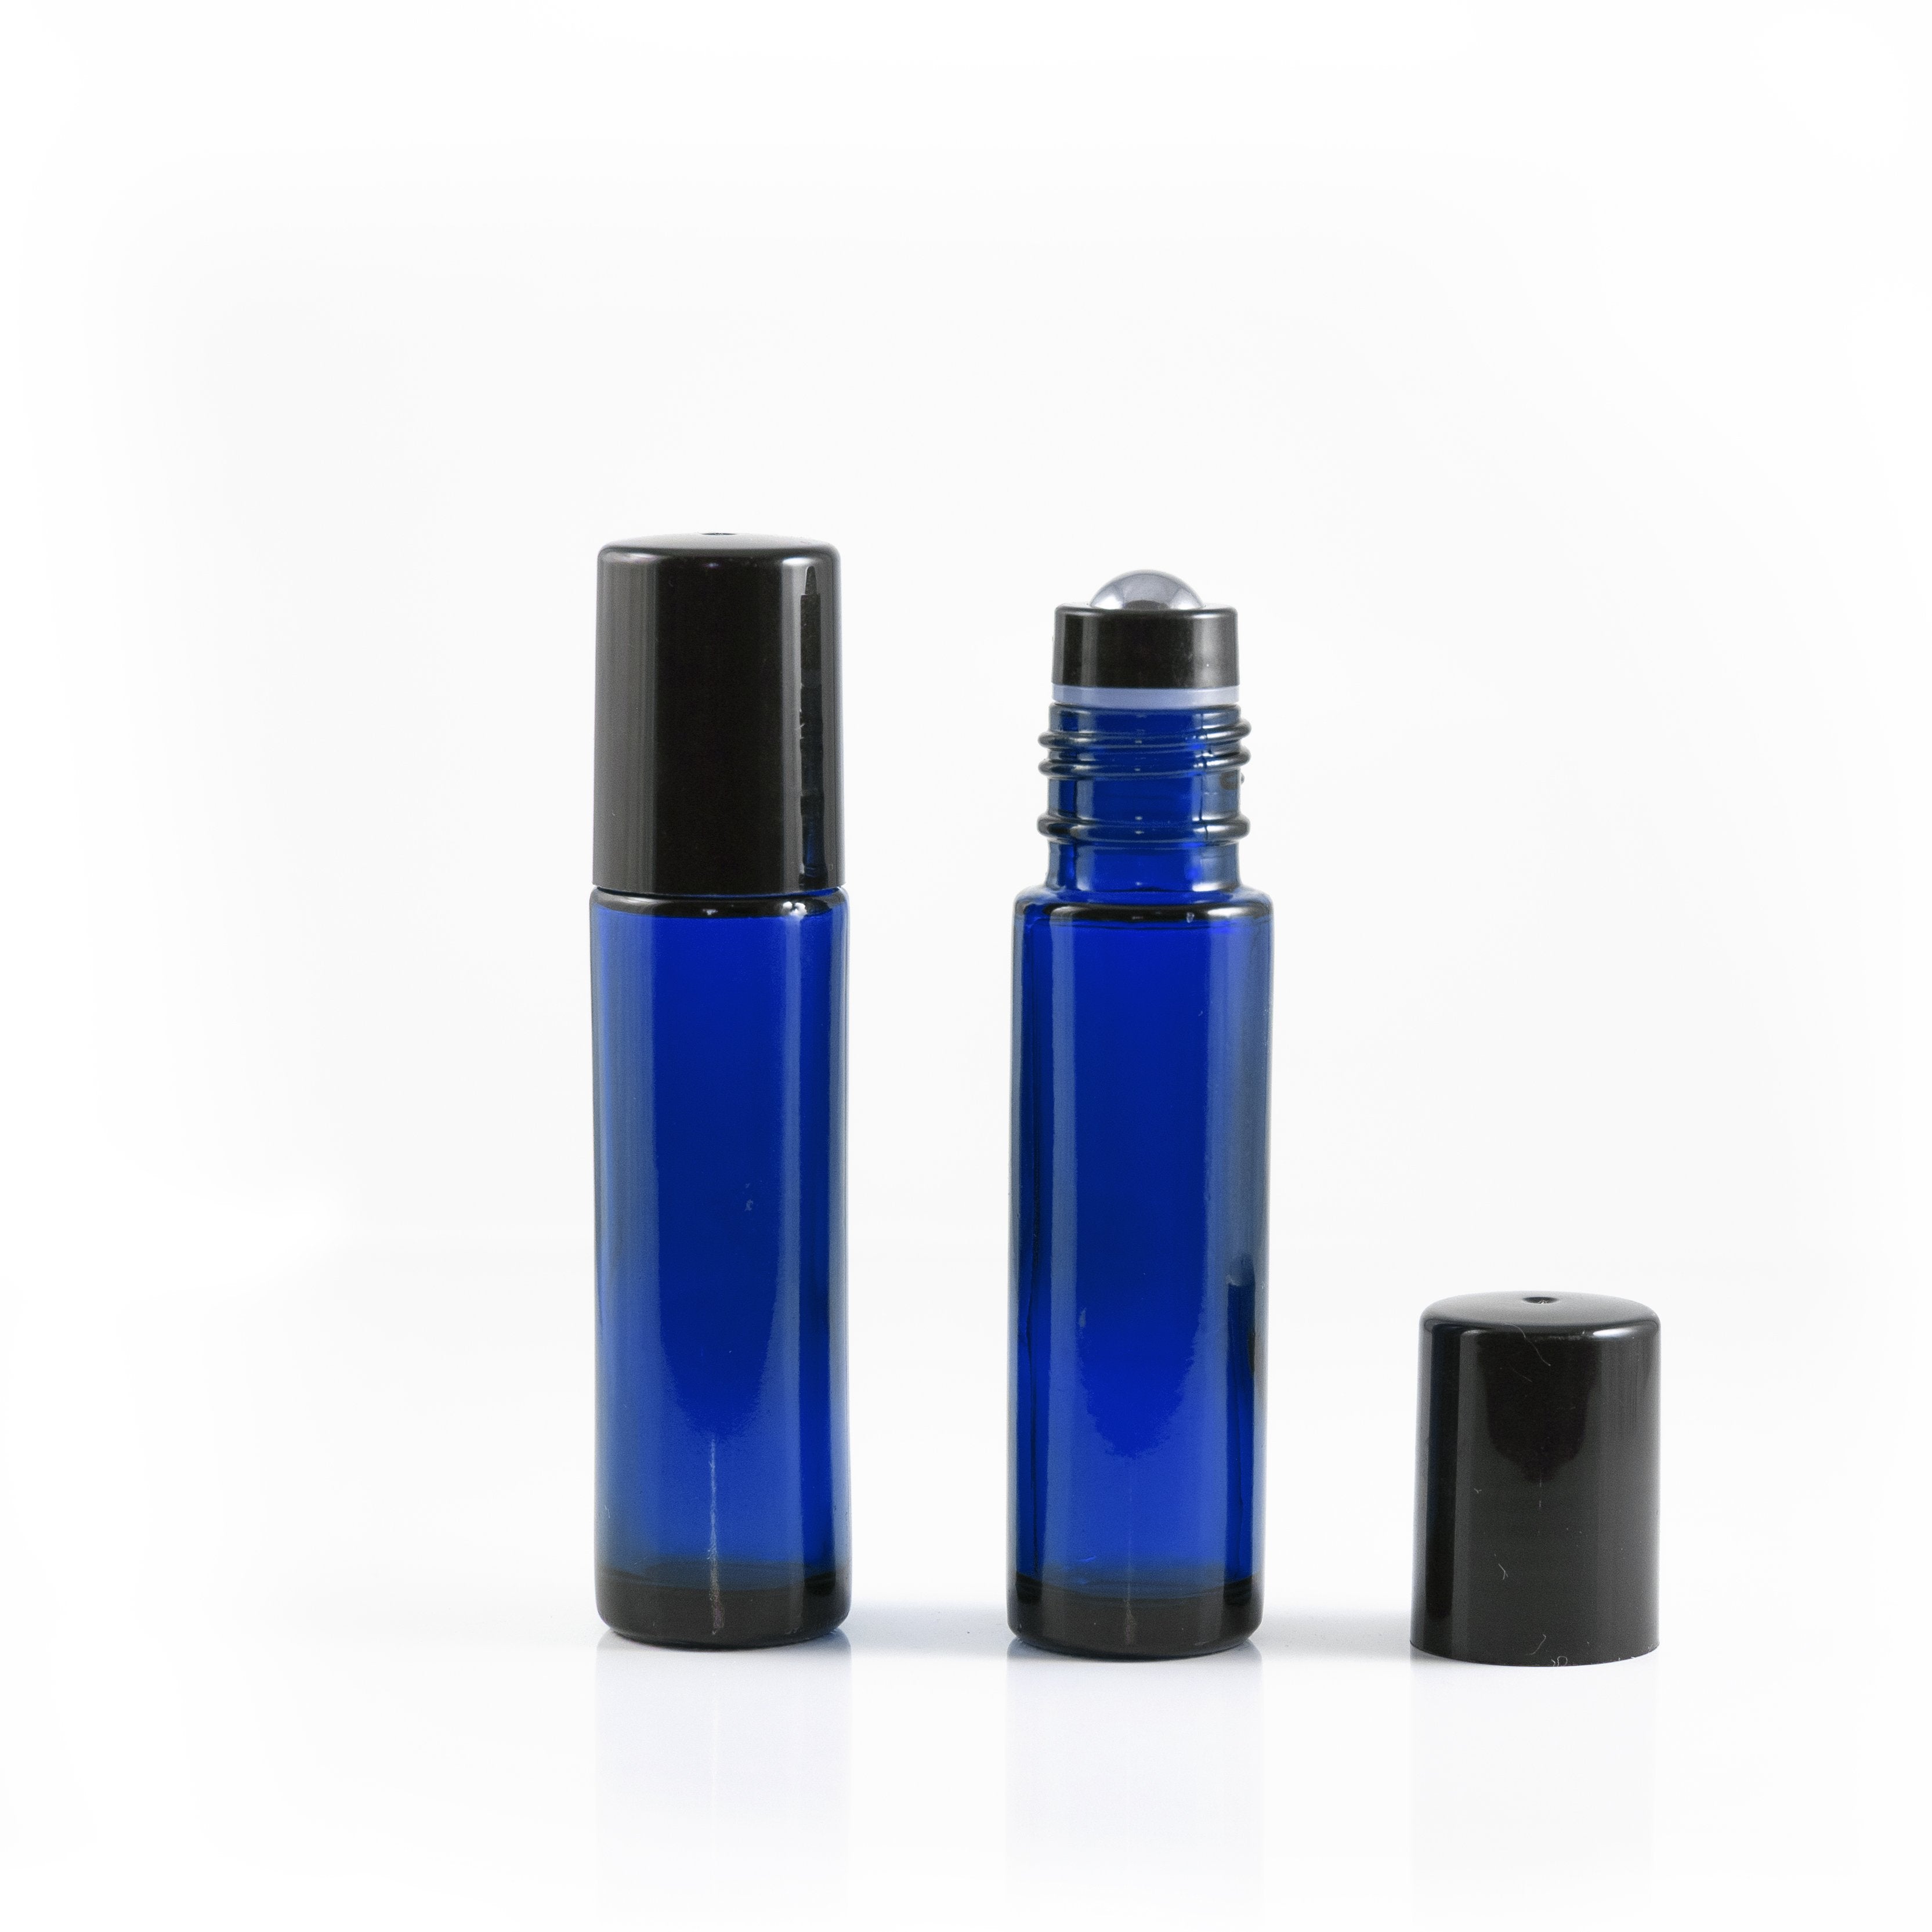 10ml szklana butelka niebieska typu rollon z nasadką z kulką ze stali nierdzewnej oraz czarną nakrętką (5szt.)